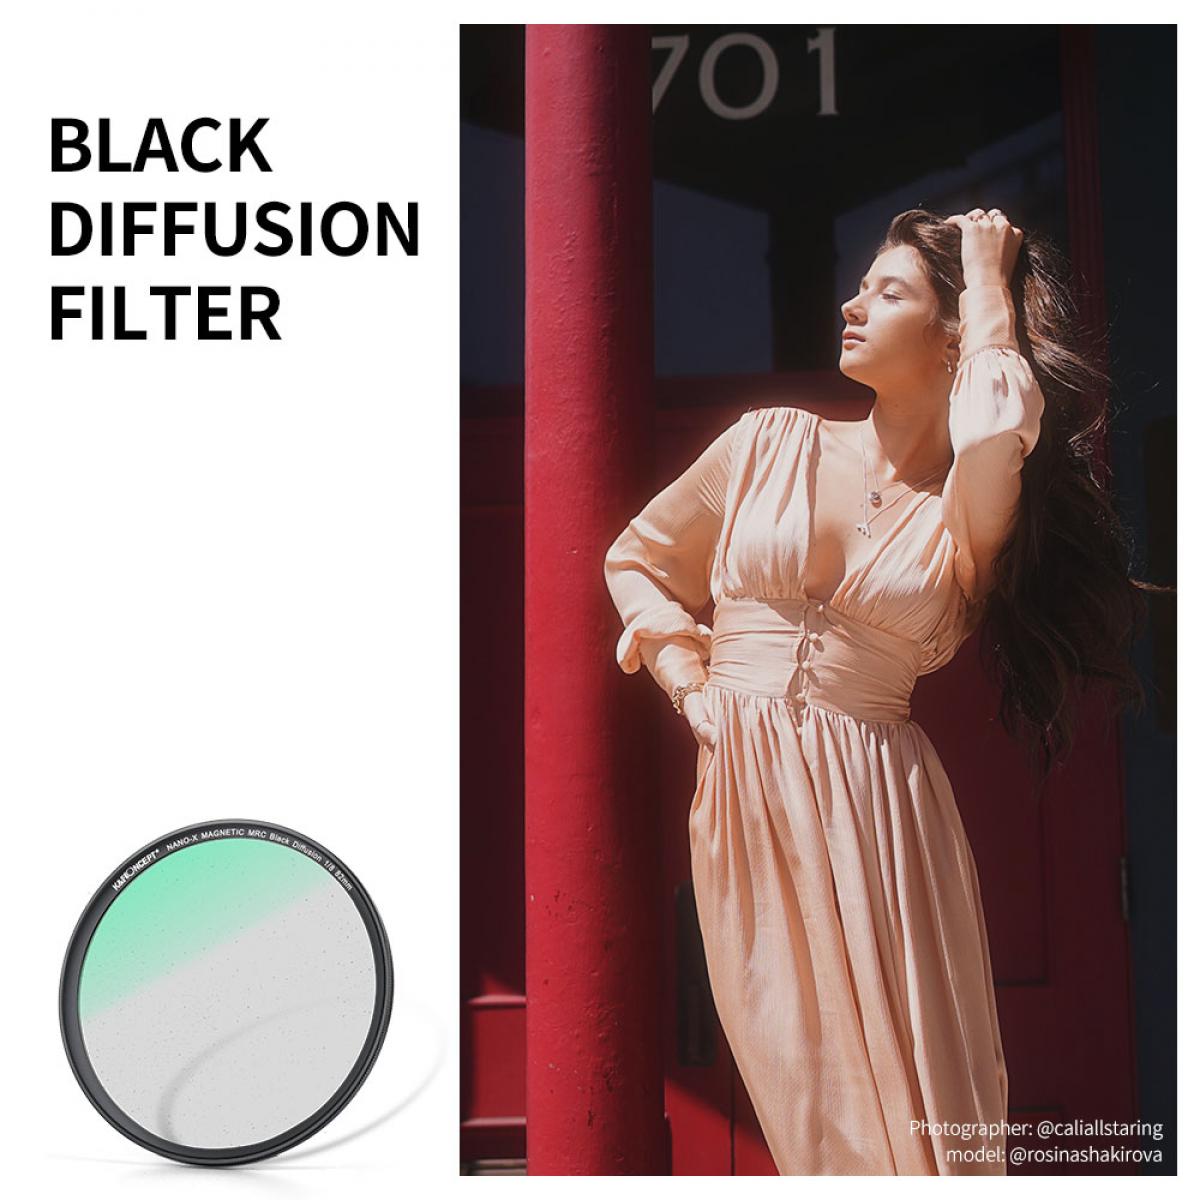 K&F Concept NANO-X Black Diffusion 1/8 Filter 72mm 